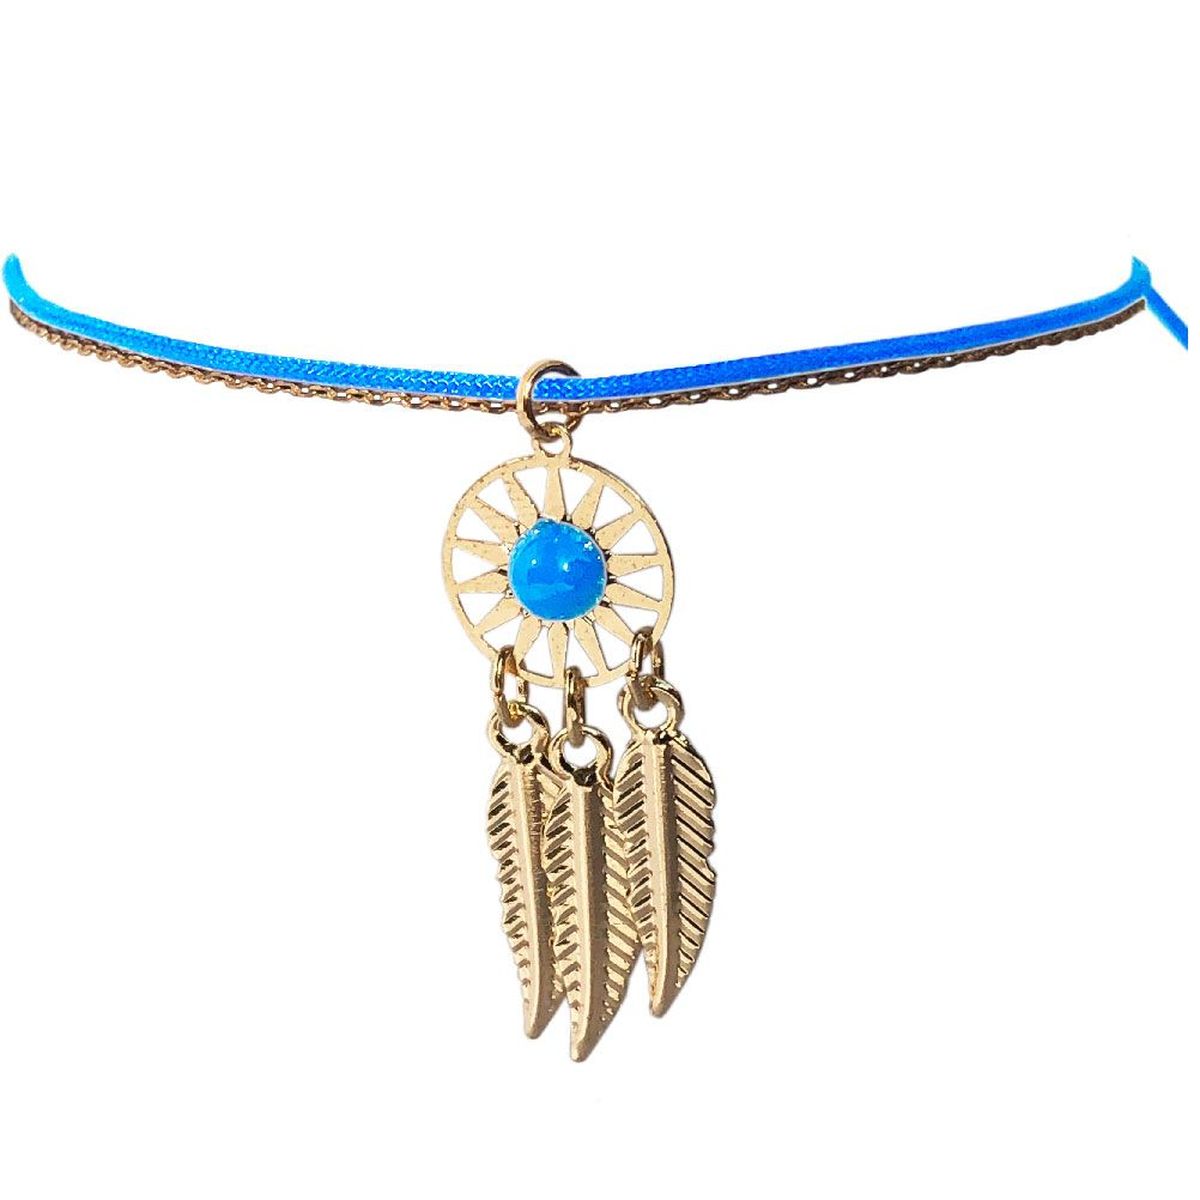 Bracelet Fantaisie Attrape Rve Boho dor - Bleu Ciel